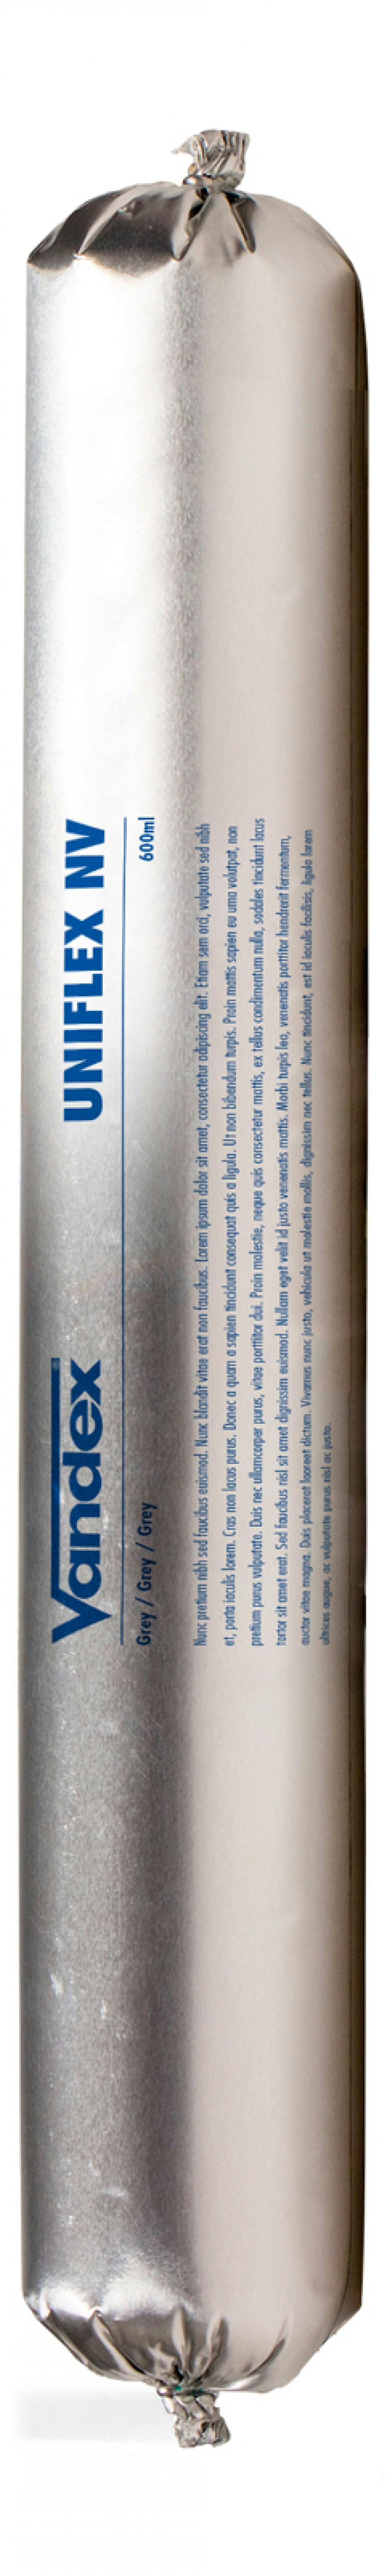 Vandex Uniflex NV 600ml - Damp-resistant adhesive